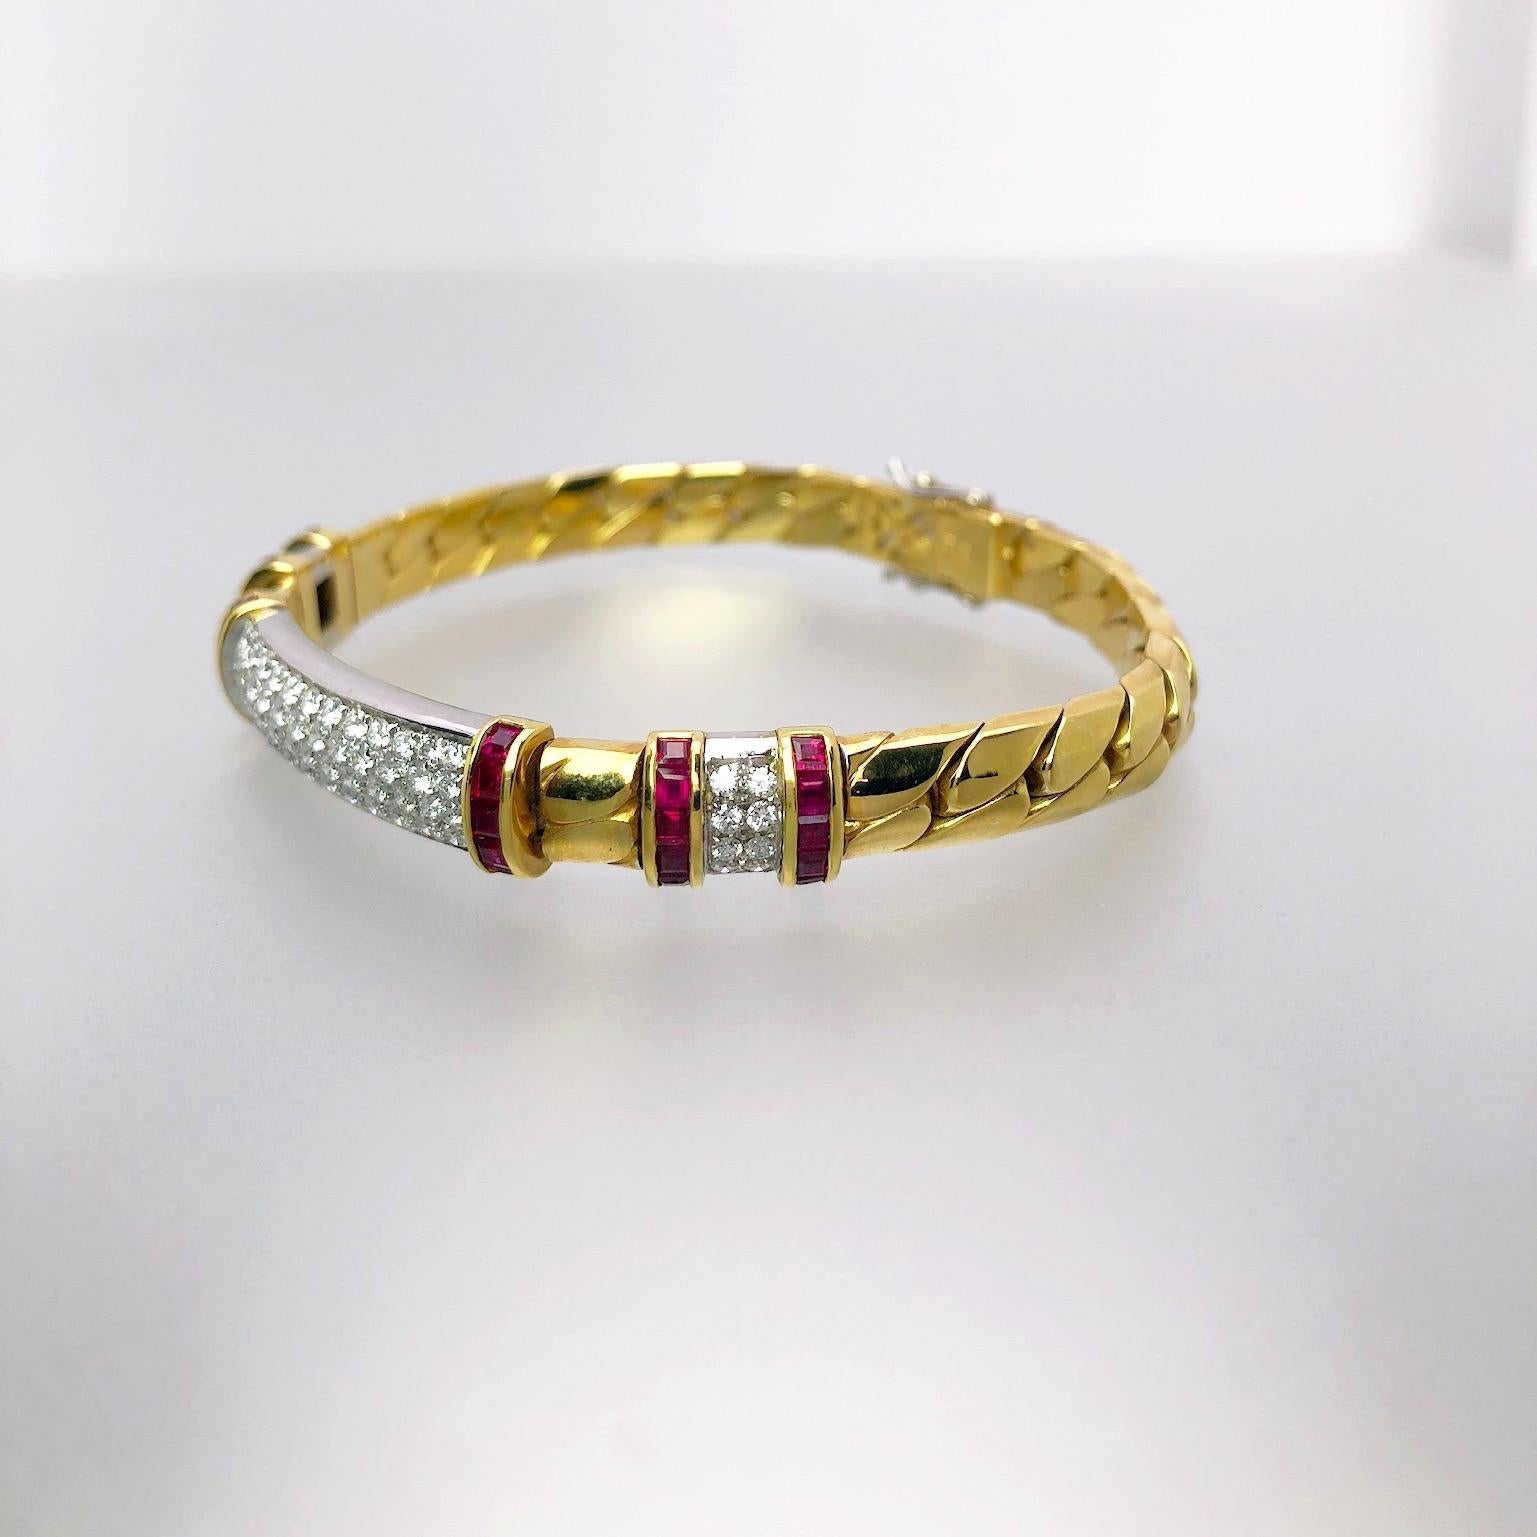 Das von Meister Giuseppe Picchiotti entworfene Armband Gourmette mit Rubin und Diamanten ist ein perfektes Beispiel für ein zeitloses Schmuckstück, das sich sowohl nach oben als auch nach unten tragen lässt. 18Kt. Gliederarmband aus Gelb- und